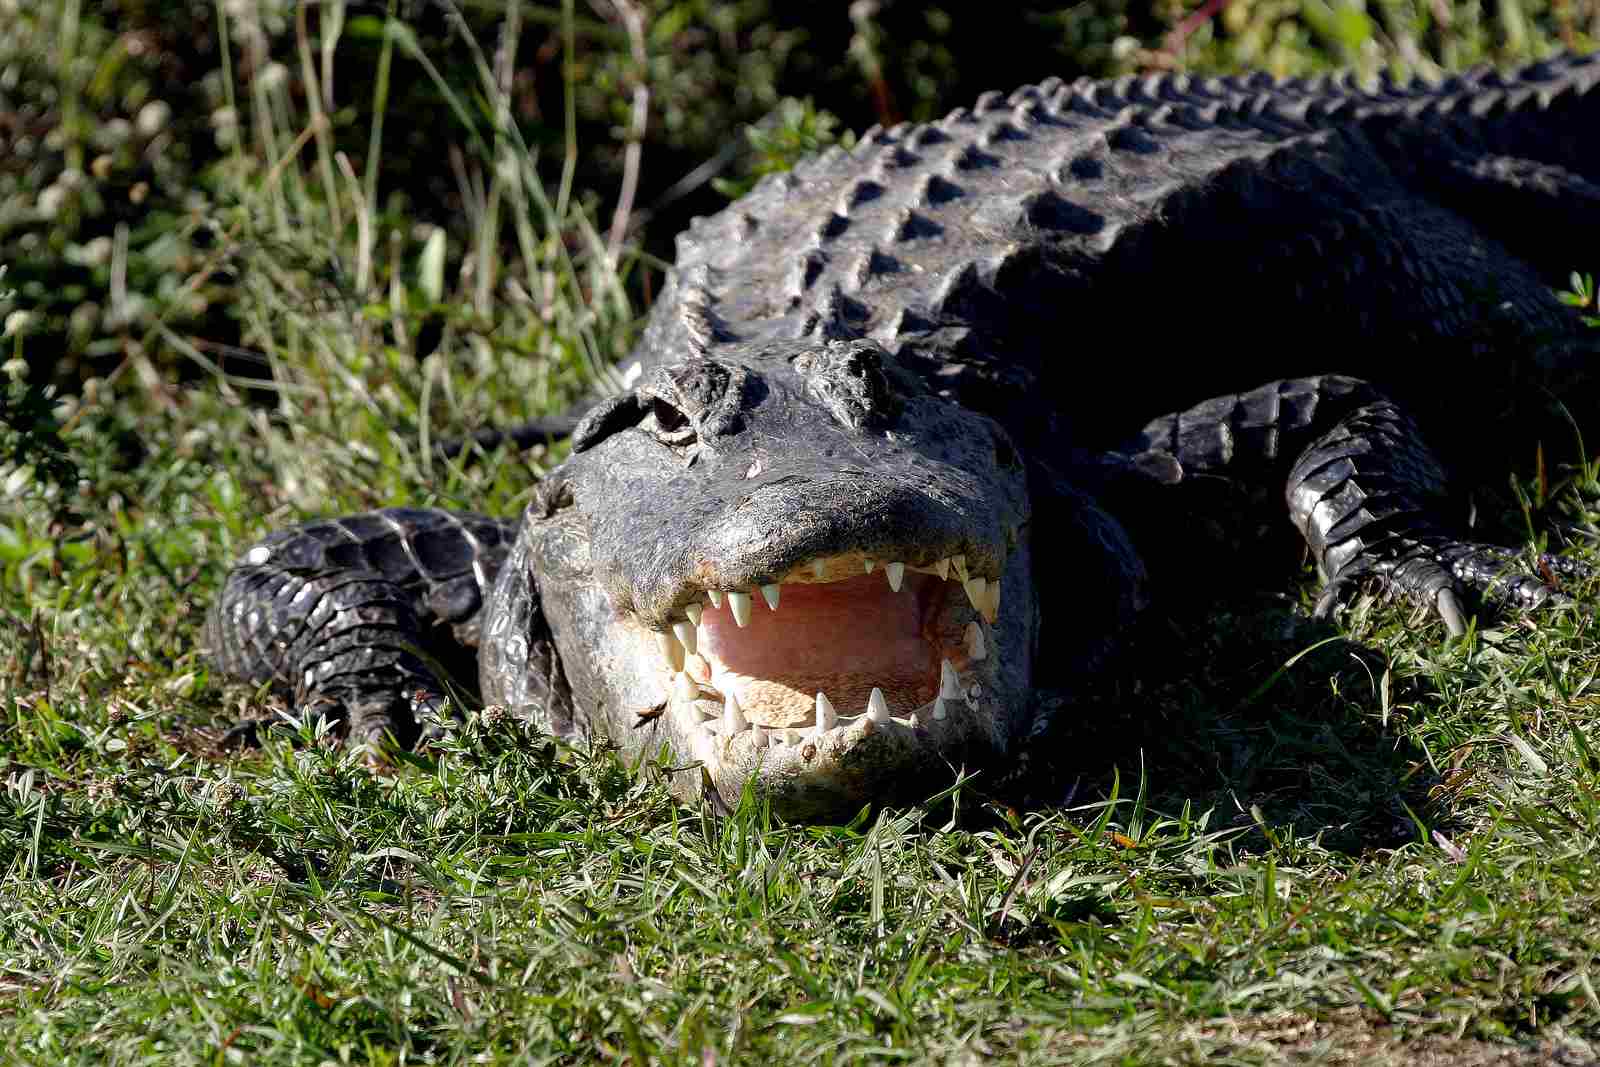 alligator vs snake